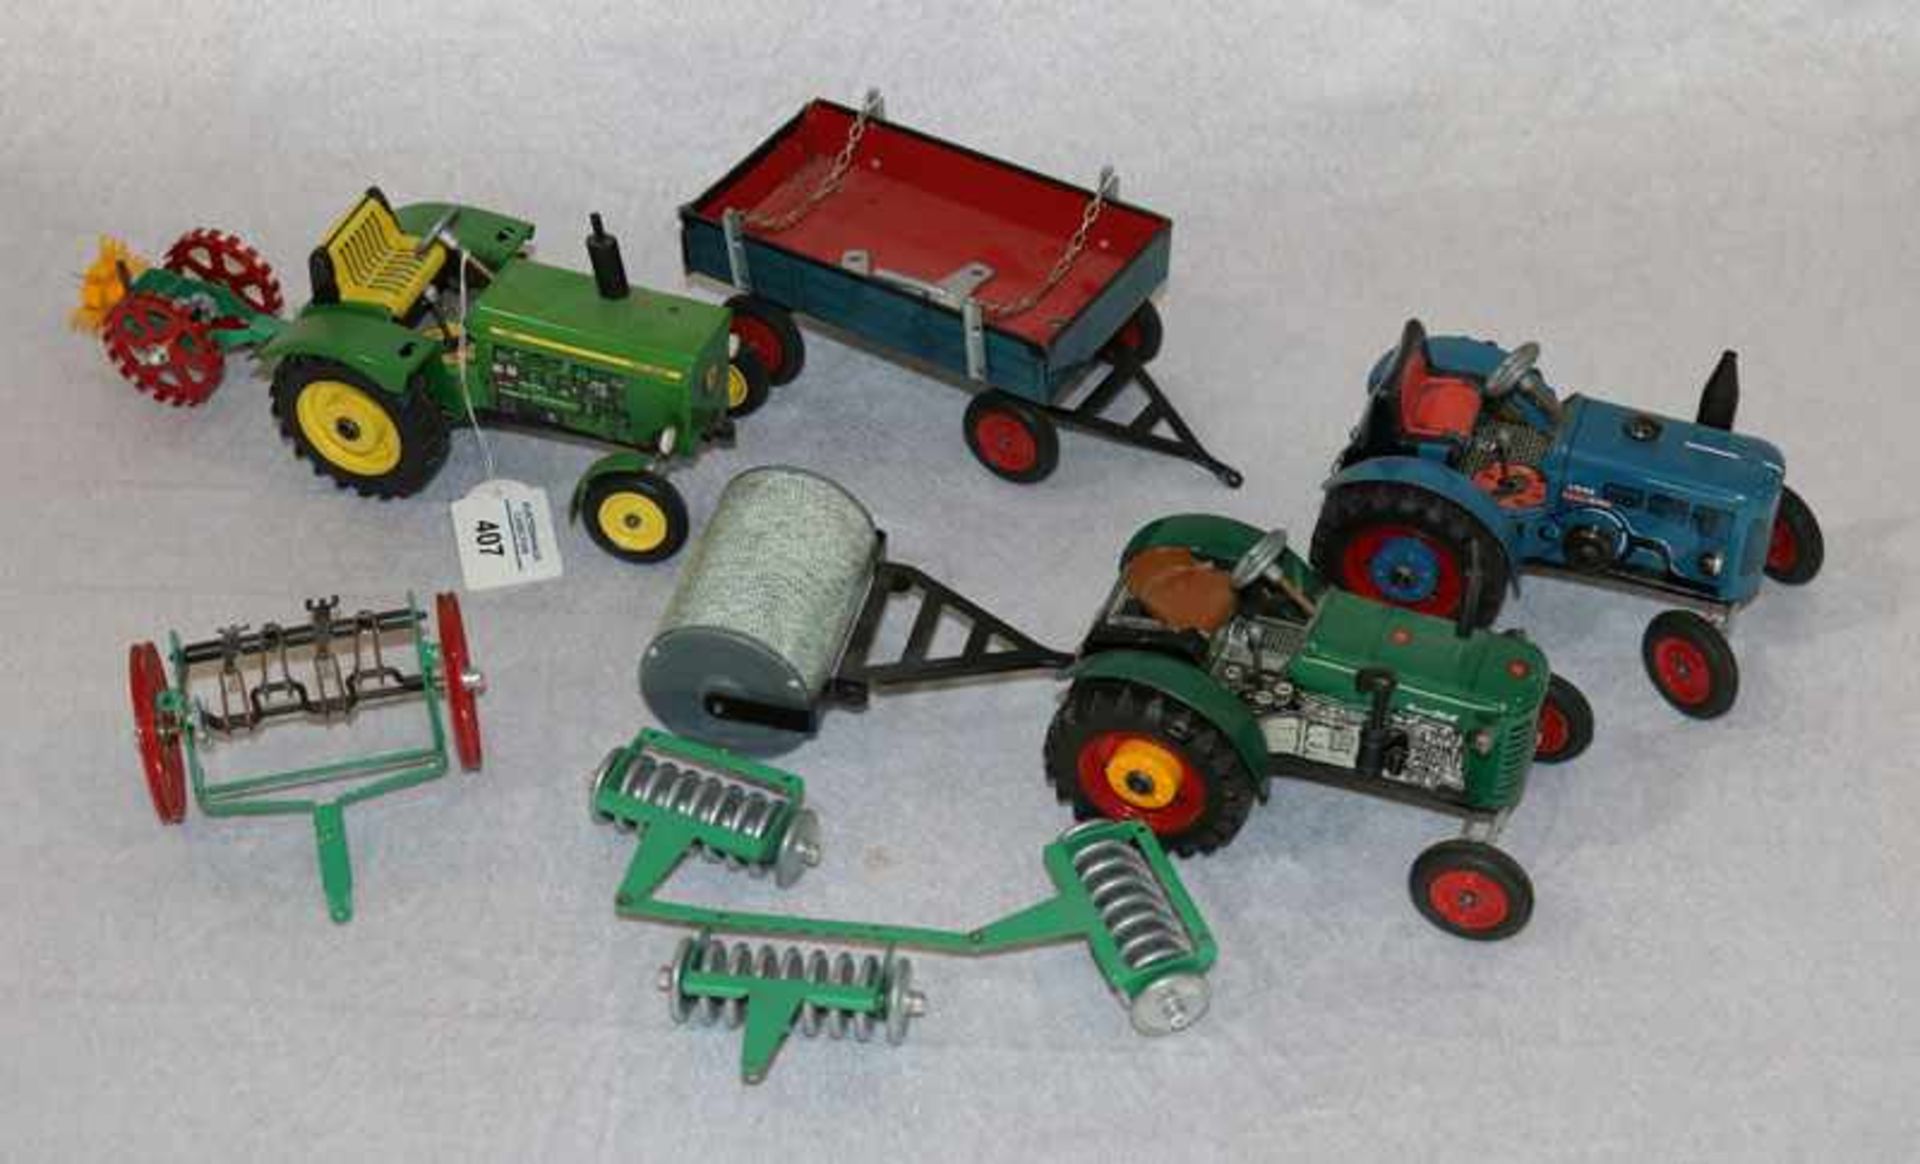 3 Modell-Traktoren: Lanz mit Anhänger, John Deere mit Anhänger, Zetor mit Walze und Heuwender und